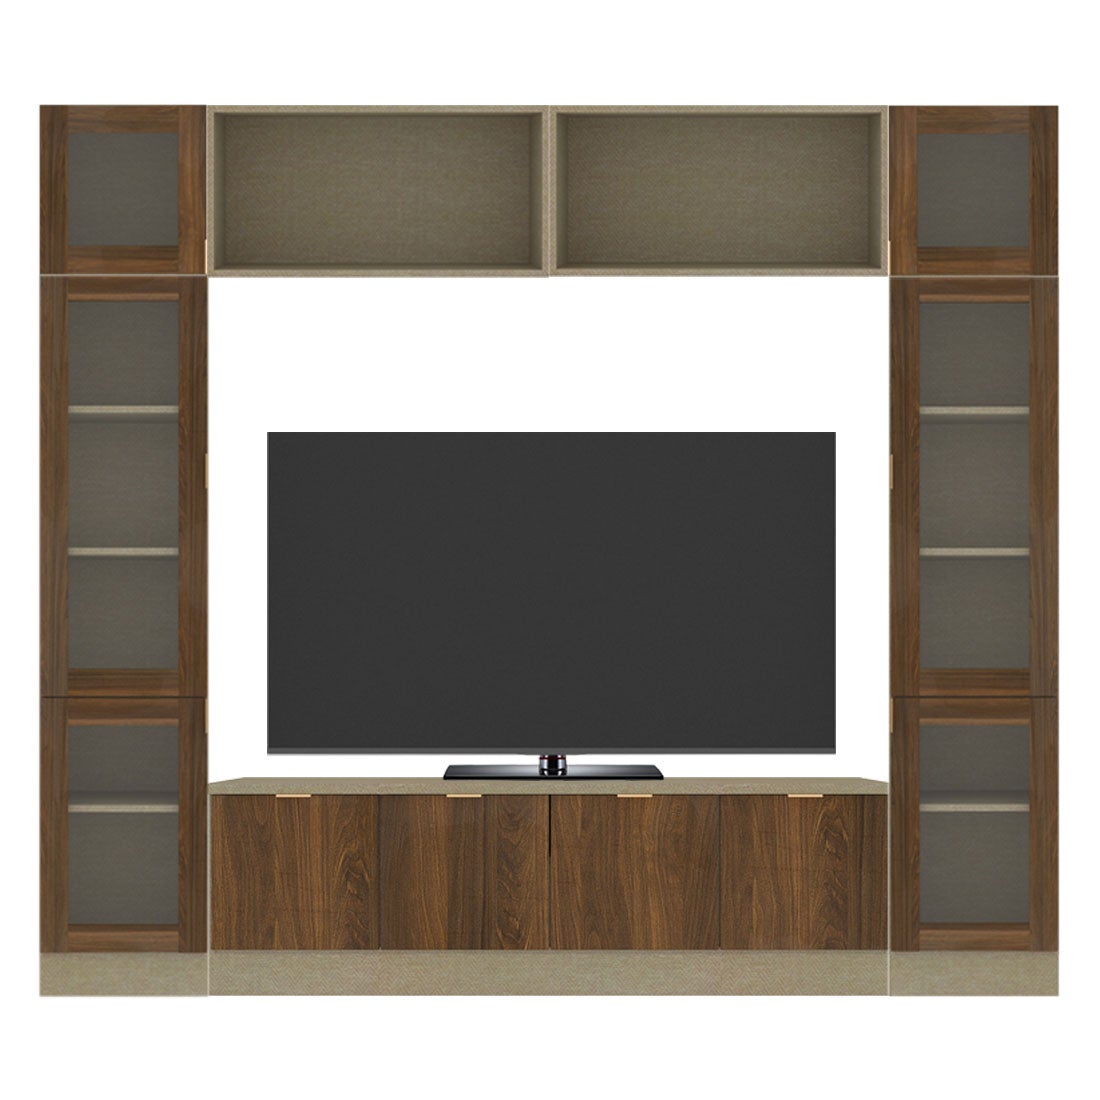 ชุดวางทีวีและตู้โชว์ ขนาด 240 ซม. รุ่น Contini Plus สีไม้โทนเข้ม01